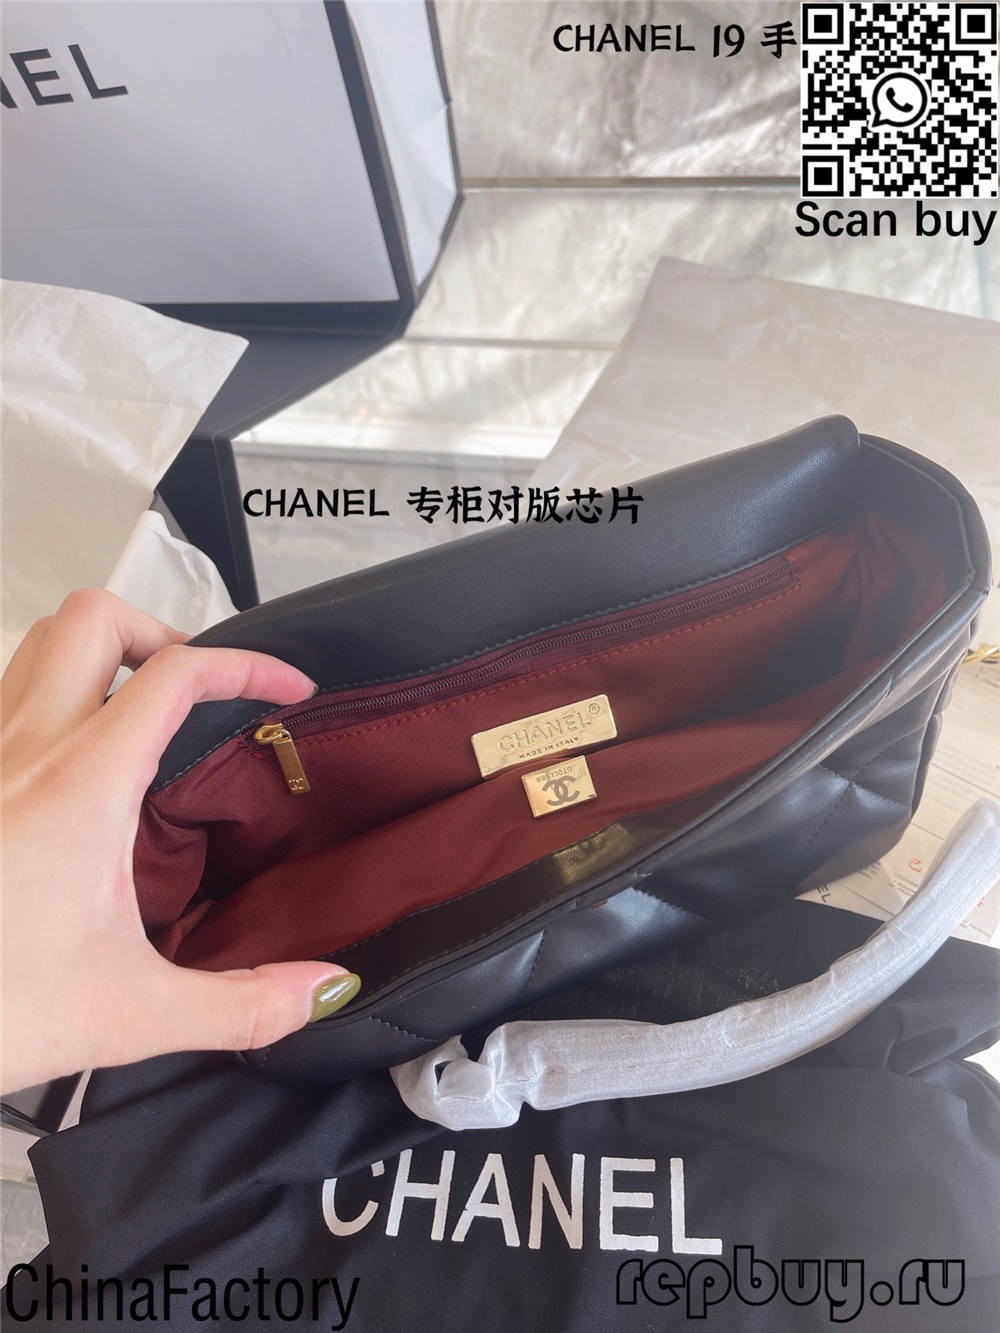 12 beg replika terbaik Chanel untuk dibeli (2022 dikemas kini)-Kedai Dalam Talian Beg Louis Vuitton Palsu Kualiti Terbaik, Beg pereka replika ru